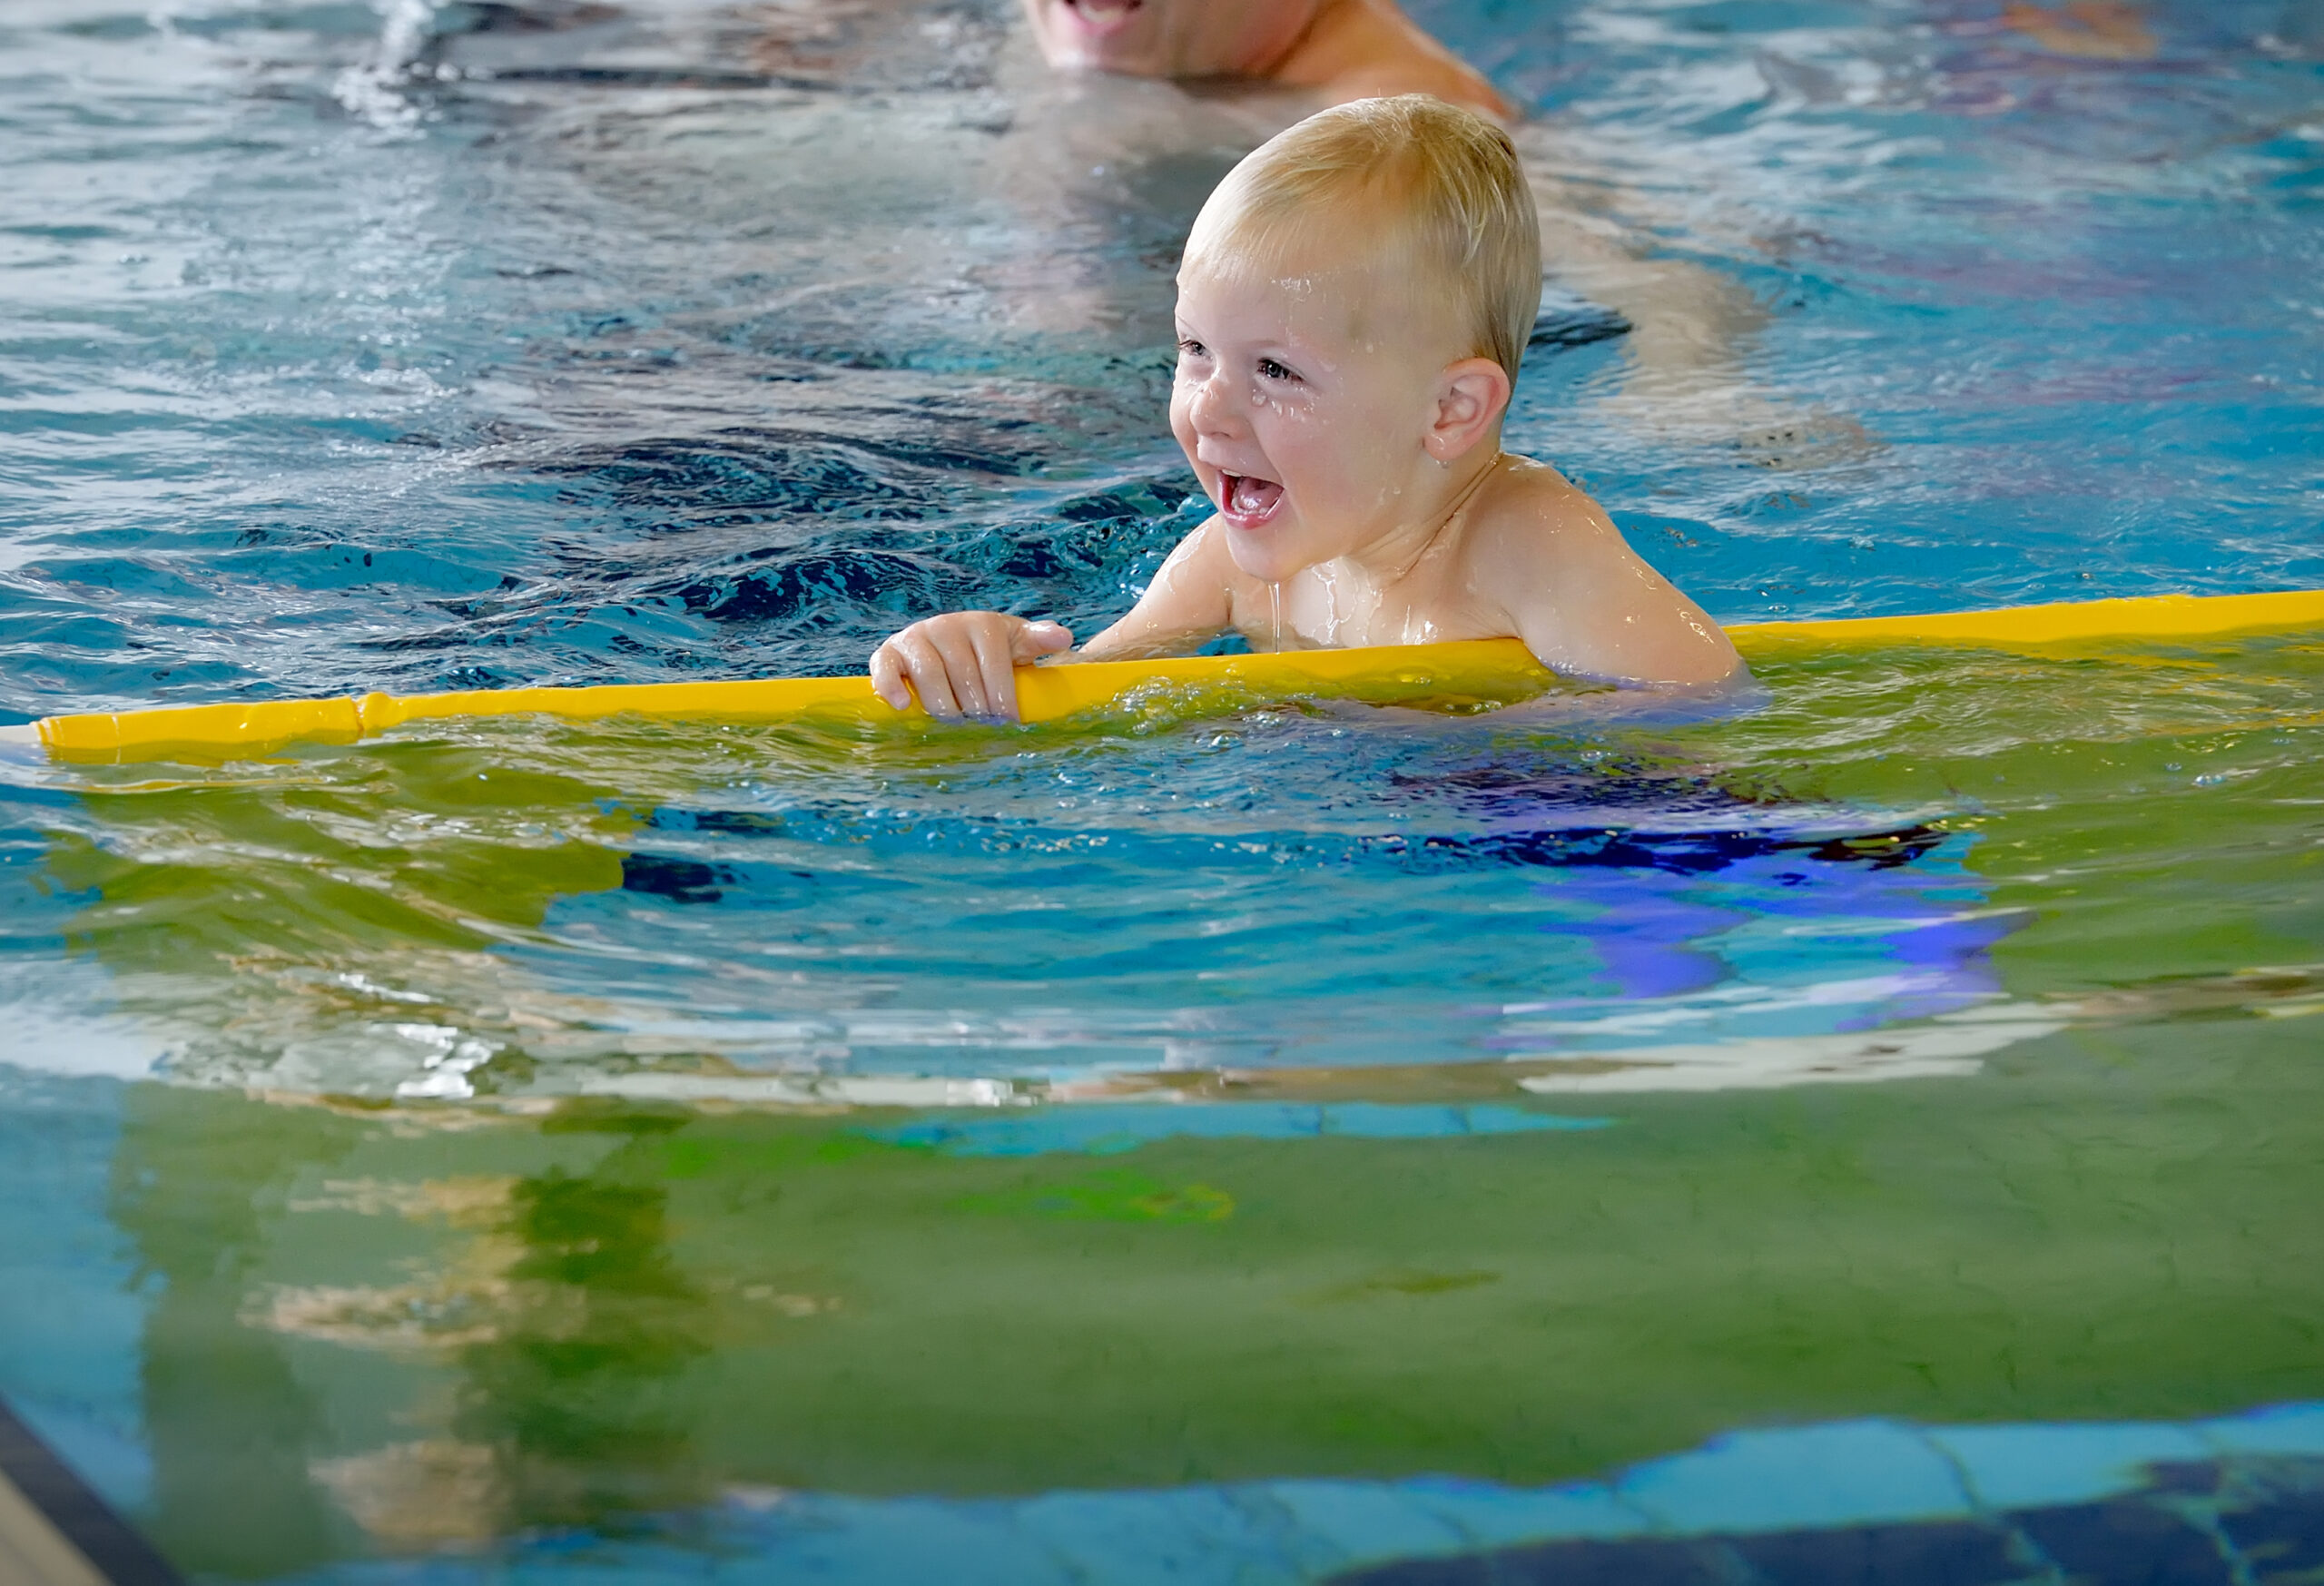 Zwemmend kind in zwembad met geel kunststof zwemattribuut/hulpmiddel